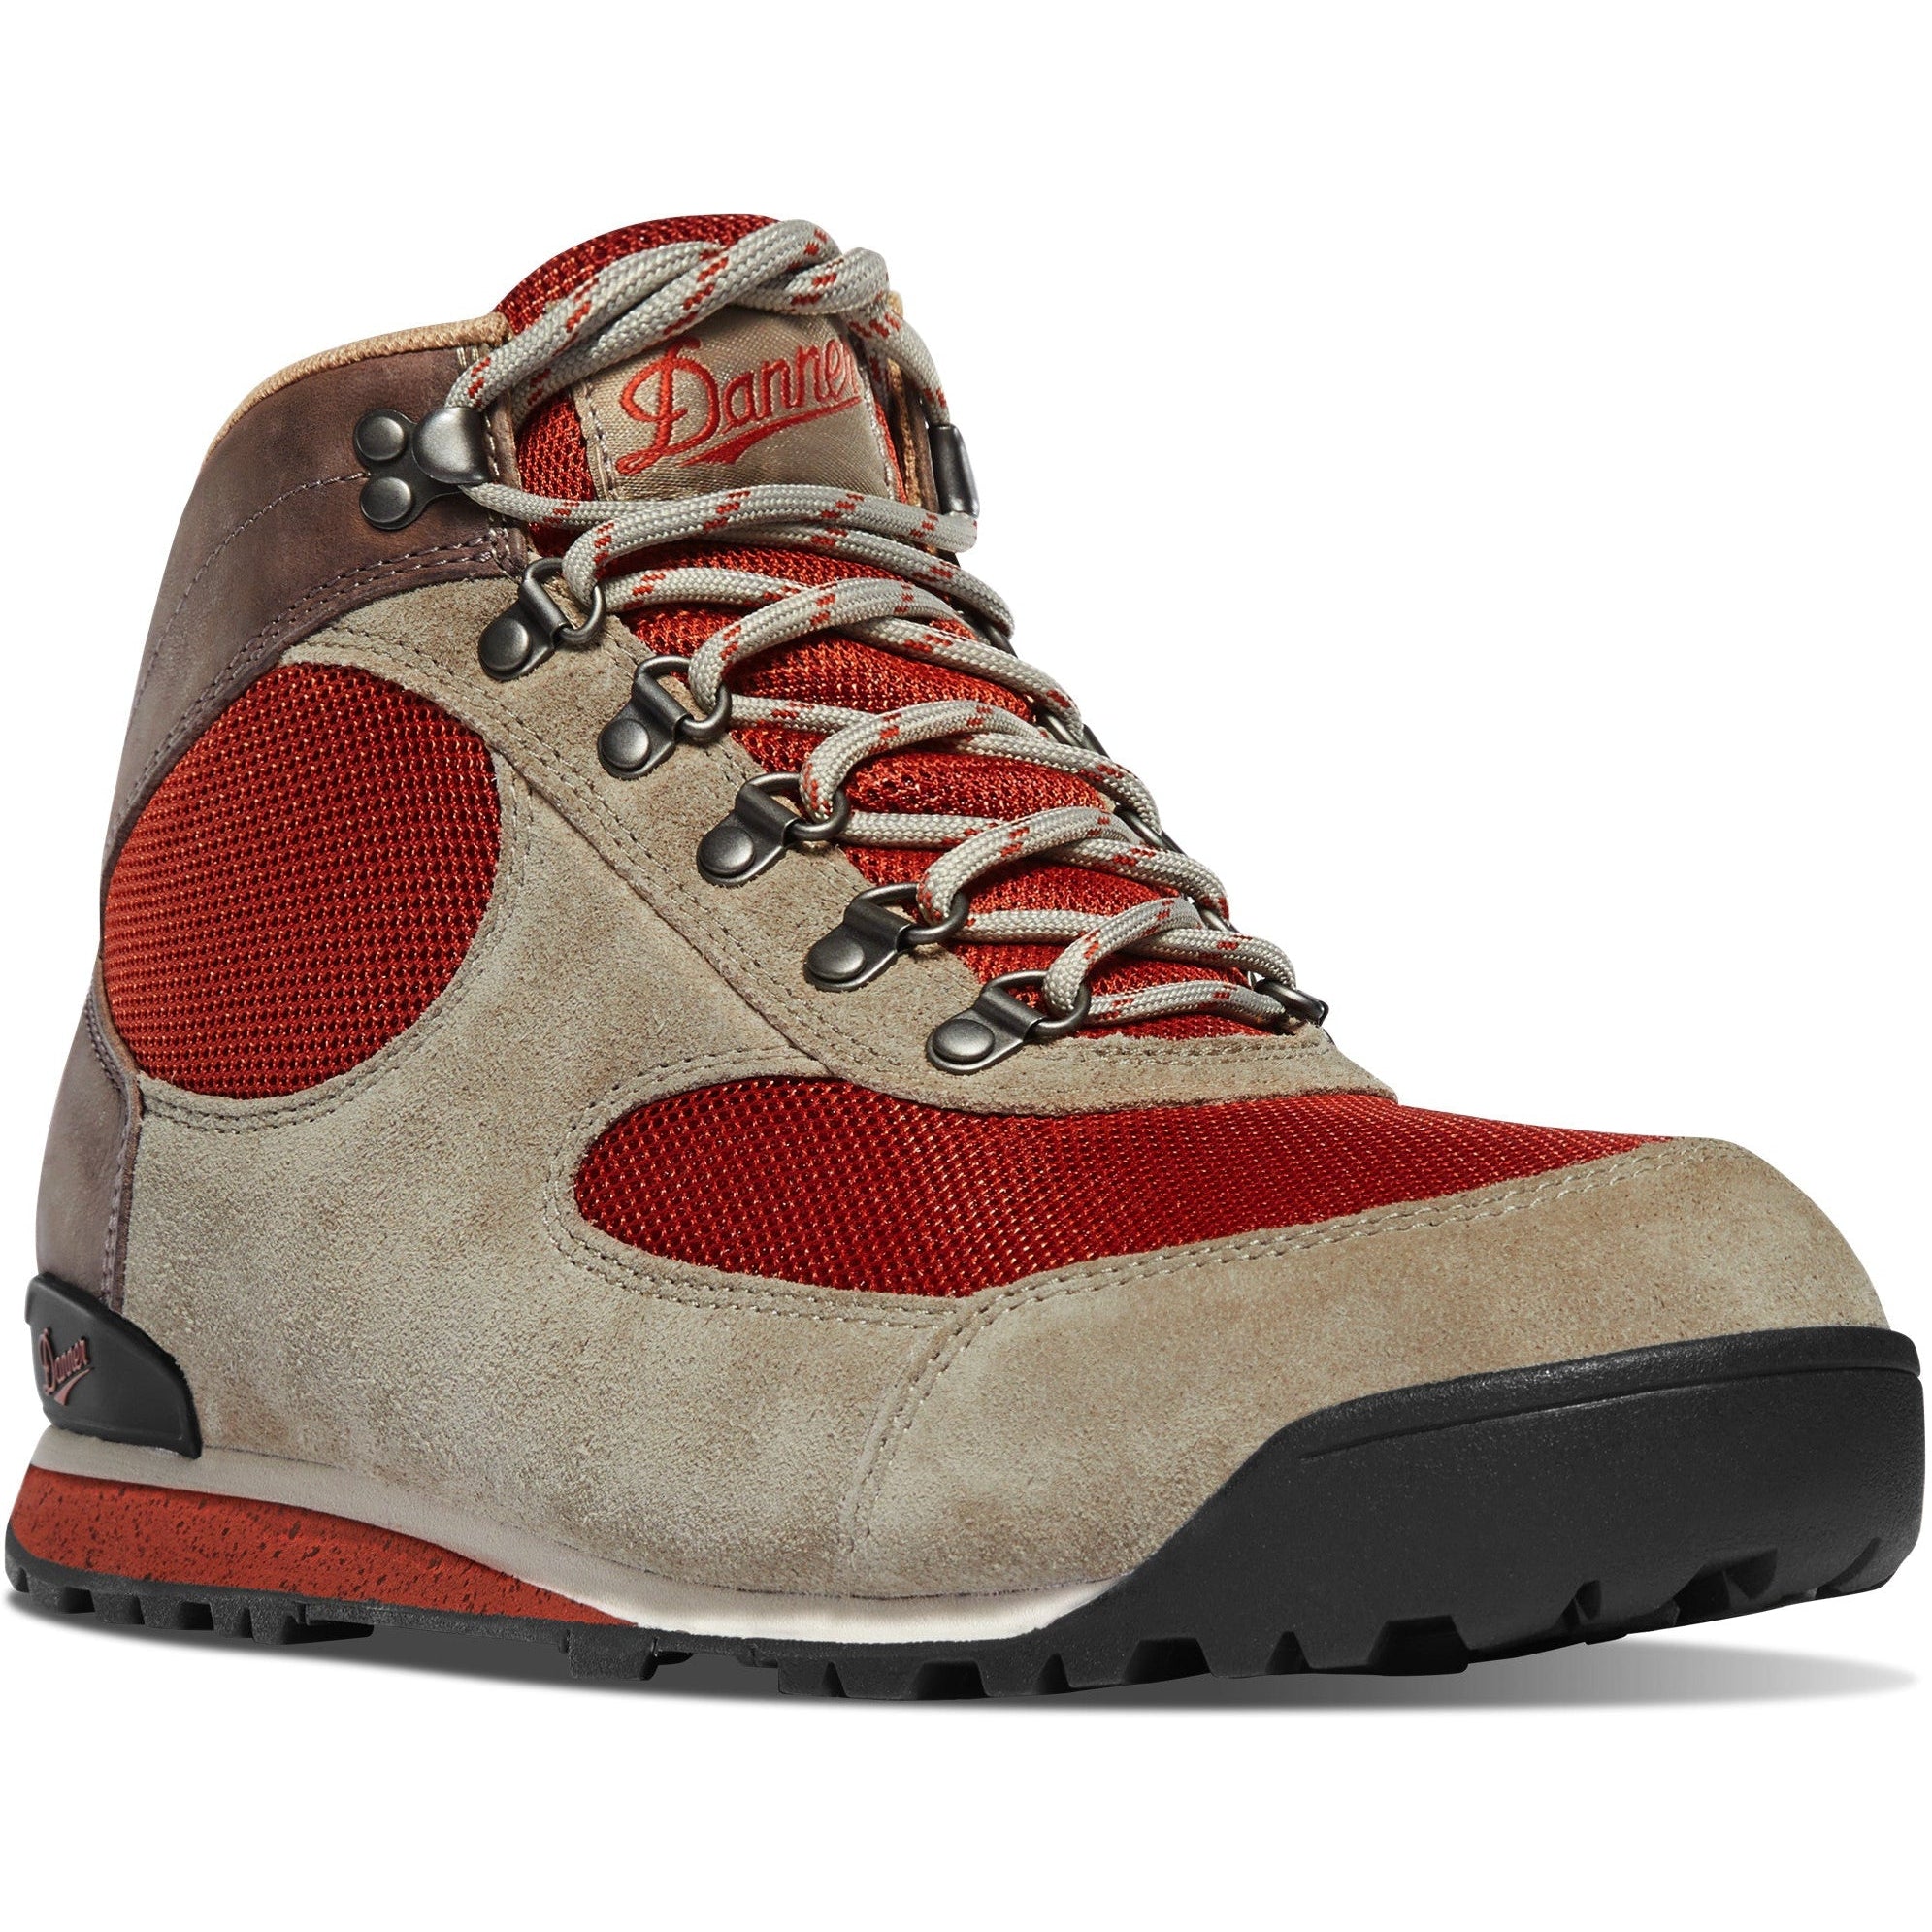 Danner Men's Jag Dry Weather 4.5" Lifestyle Shoe - Birch - 37244 7 / Medium / Brown - Overlook Boots